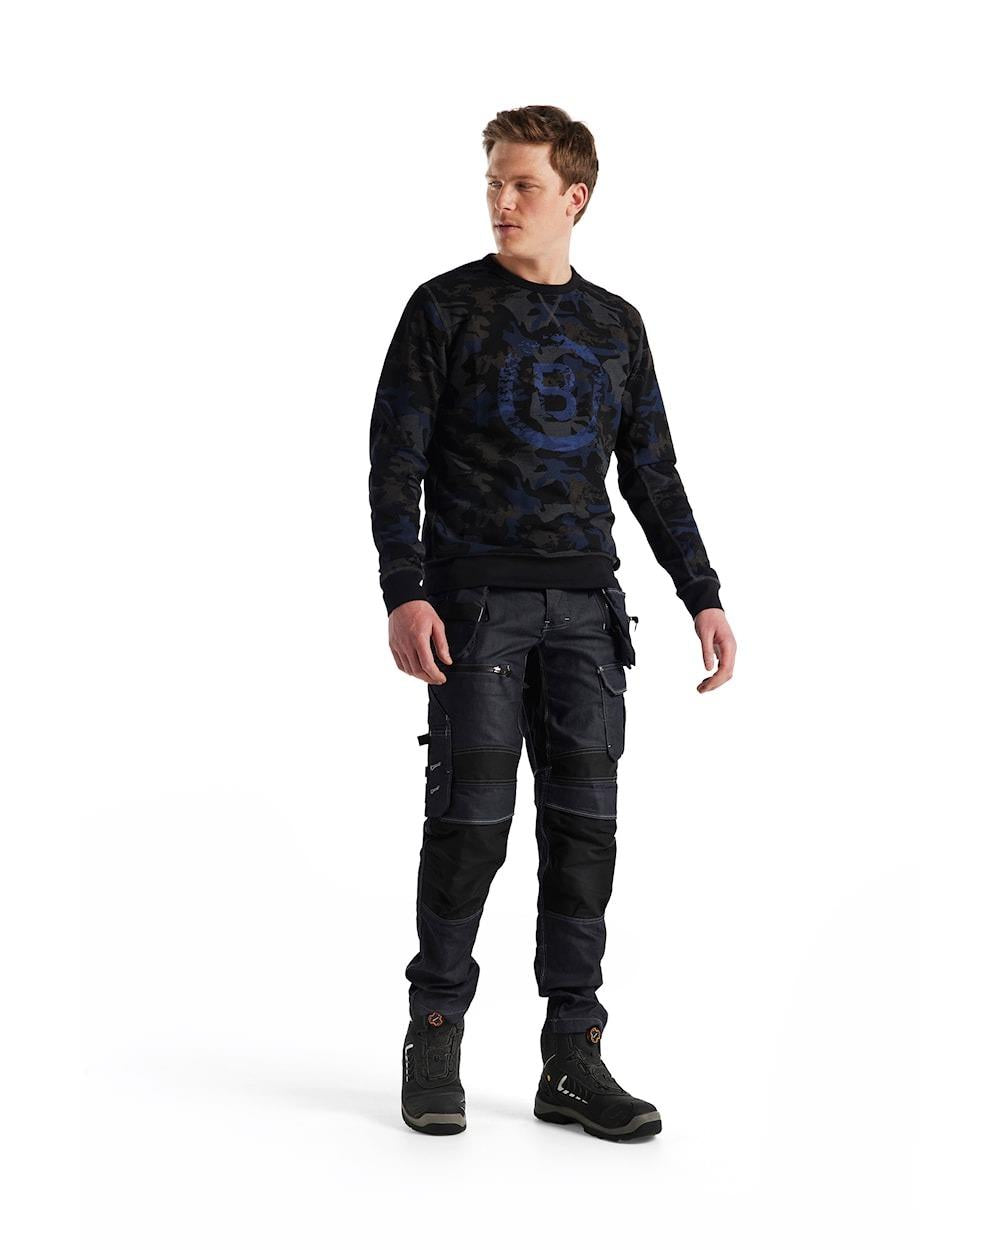 Blaklader black/grey cotton unisex camouflage round-neck sweatshirt #9408